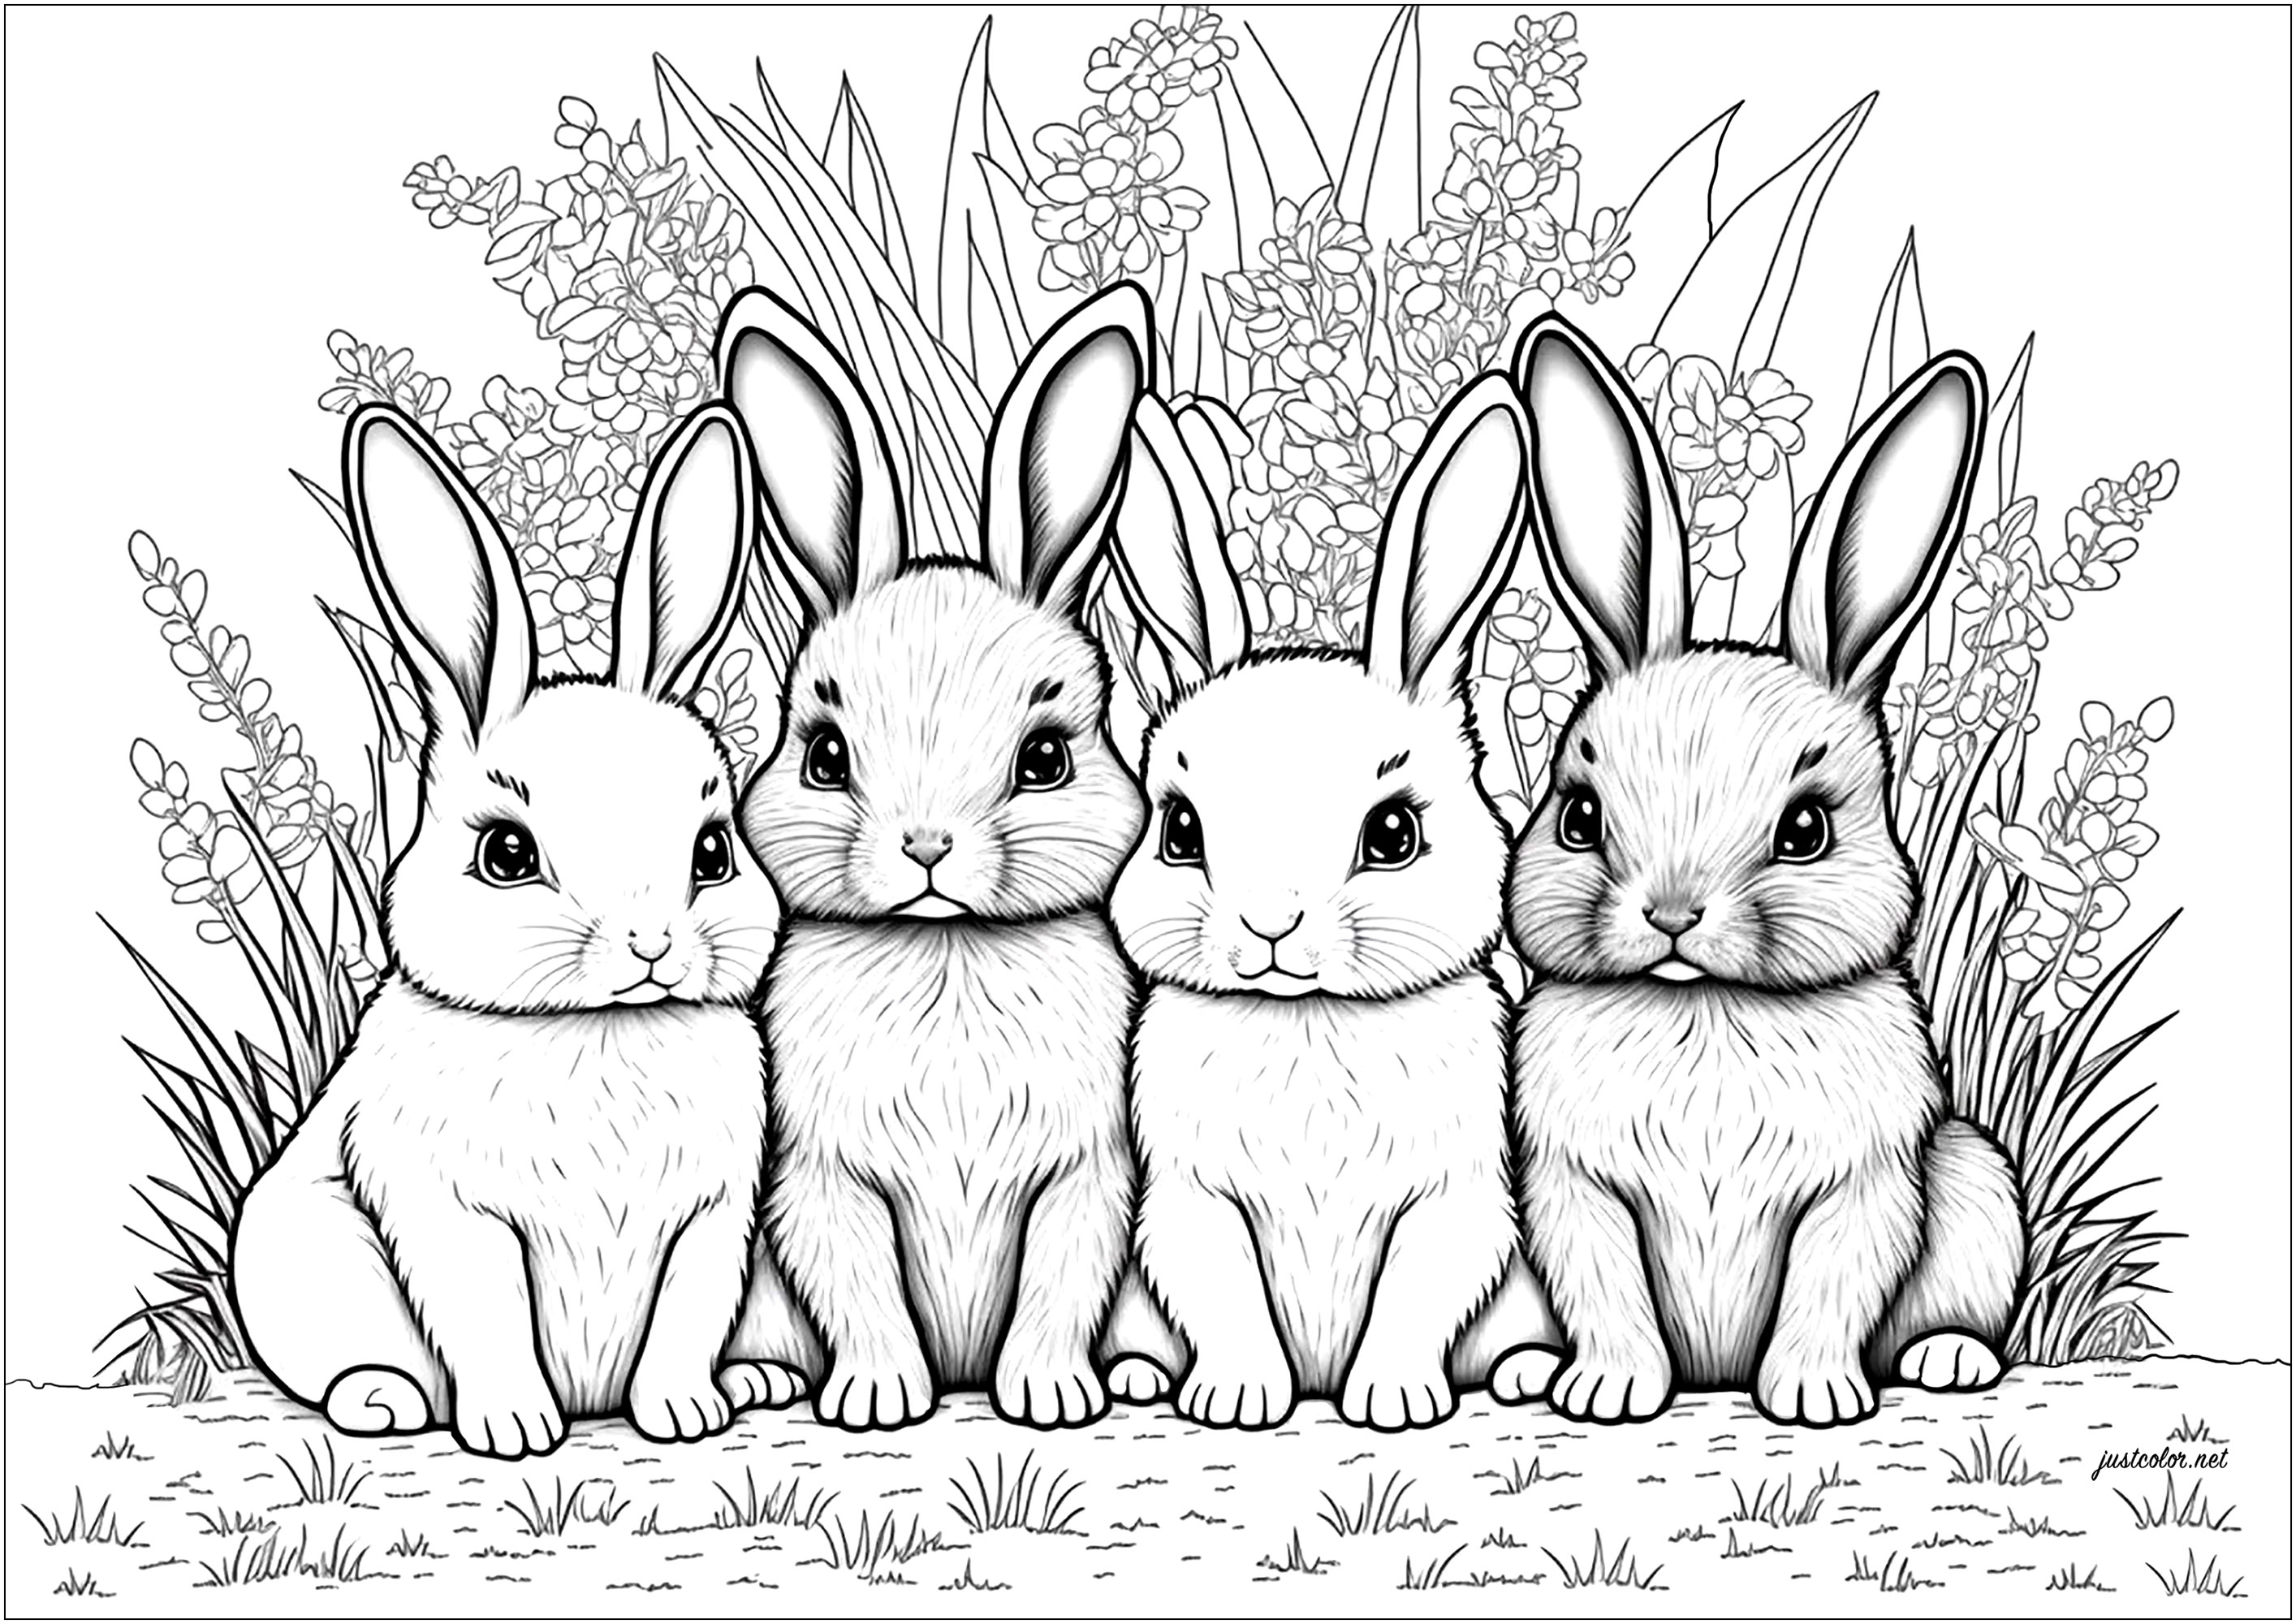 Quatre petits lapins mignons à colorier, avec un arrière plan feuillu. Ce coloriage est mignon à souhait ! Quatre petits lapins, tous plus adorables les uns que les autres, vous attendent, prêts à être coloriés. Ils sont tous assis sur leurs pattes arrières, avec leurs longues oreilles et leurs grands yeux, et sont entourés d'un arrière plan feuillu.